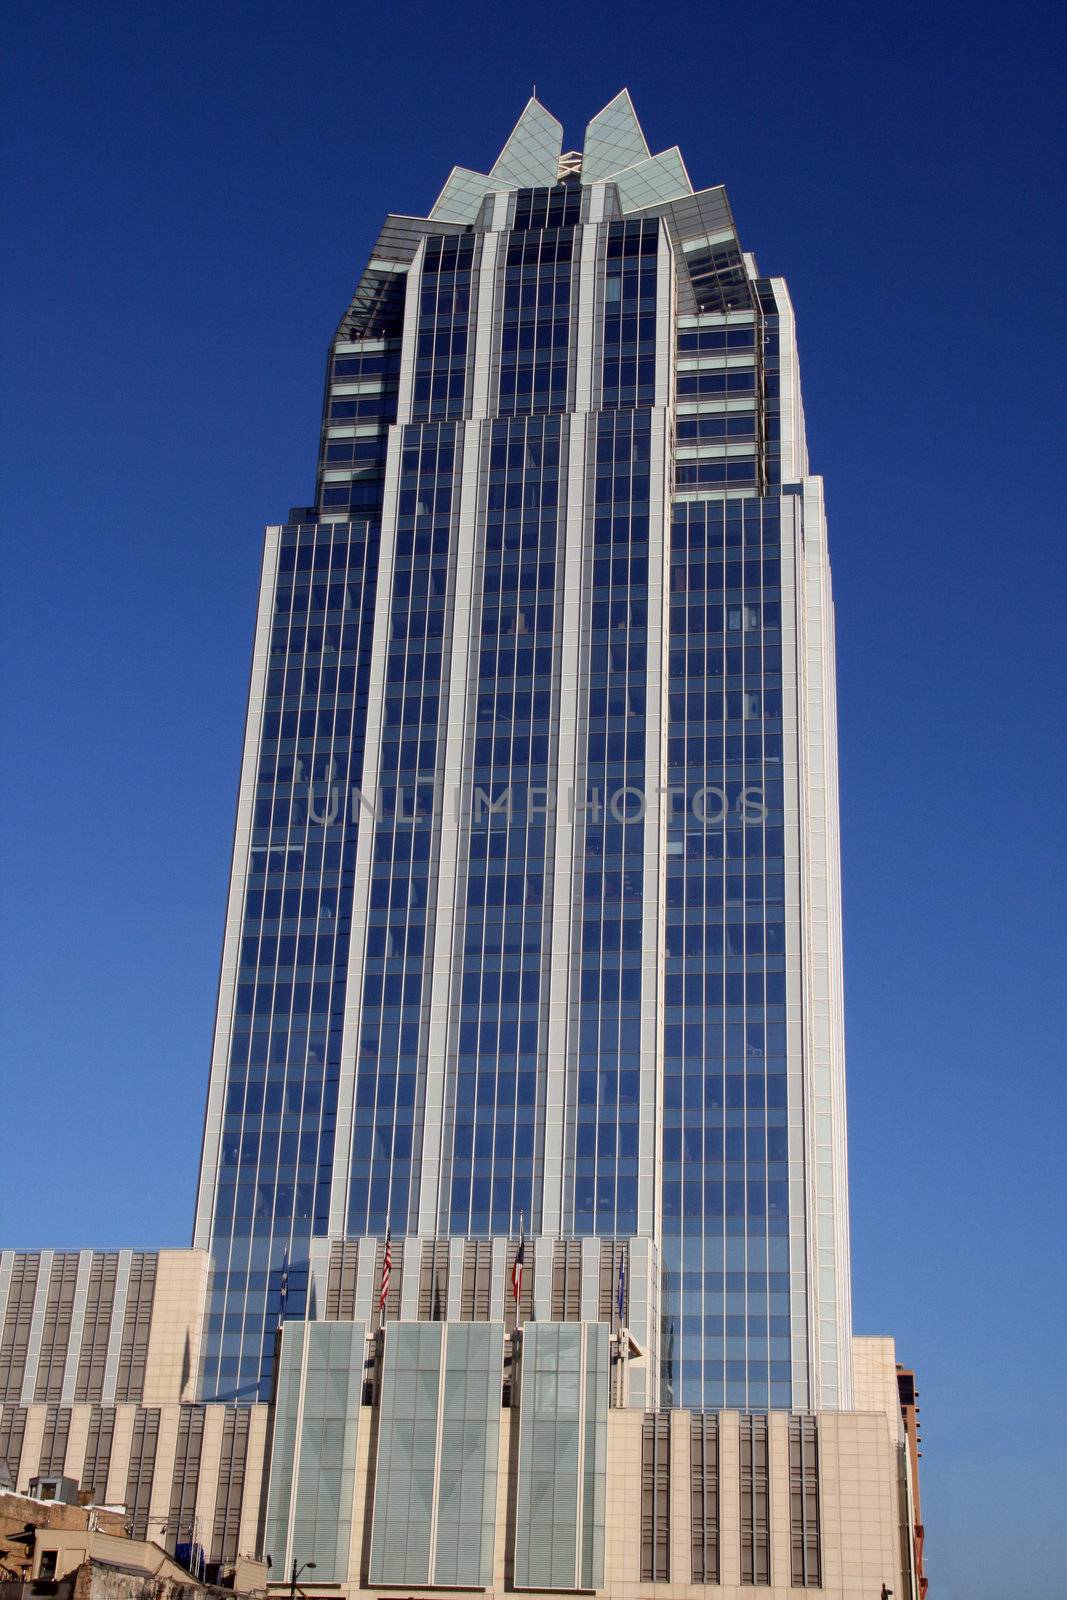 A building in the Austin, Texas skyline.